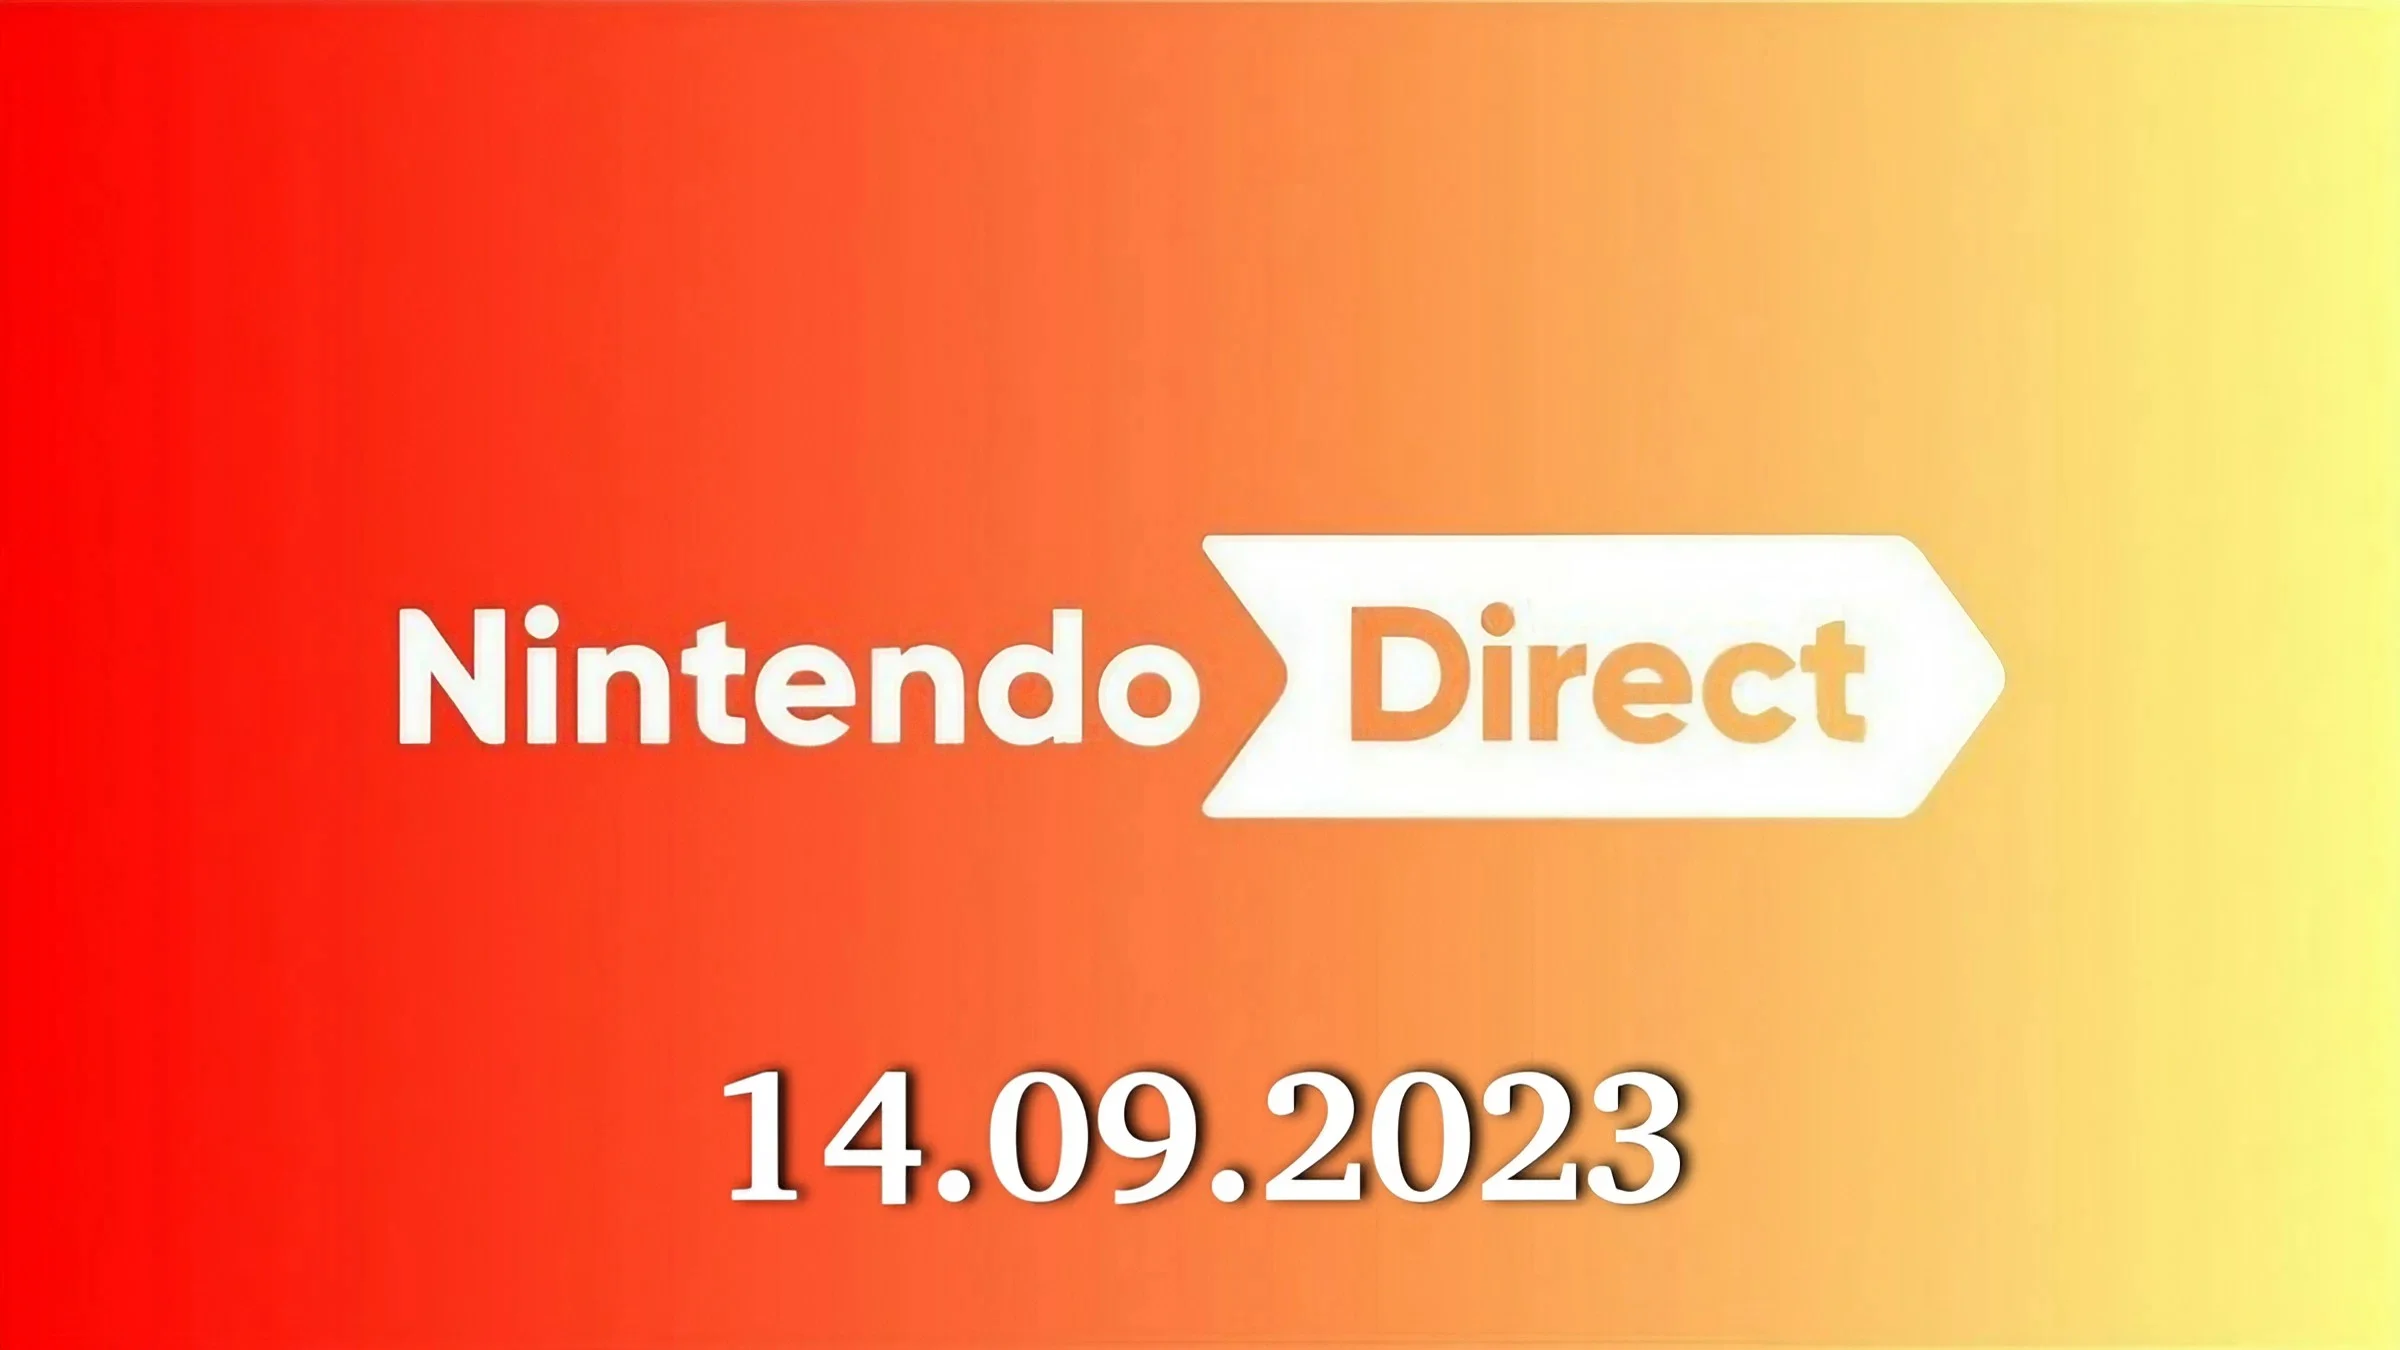 Nintendo Direct Setembro 2023 - Confira o resumo 2